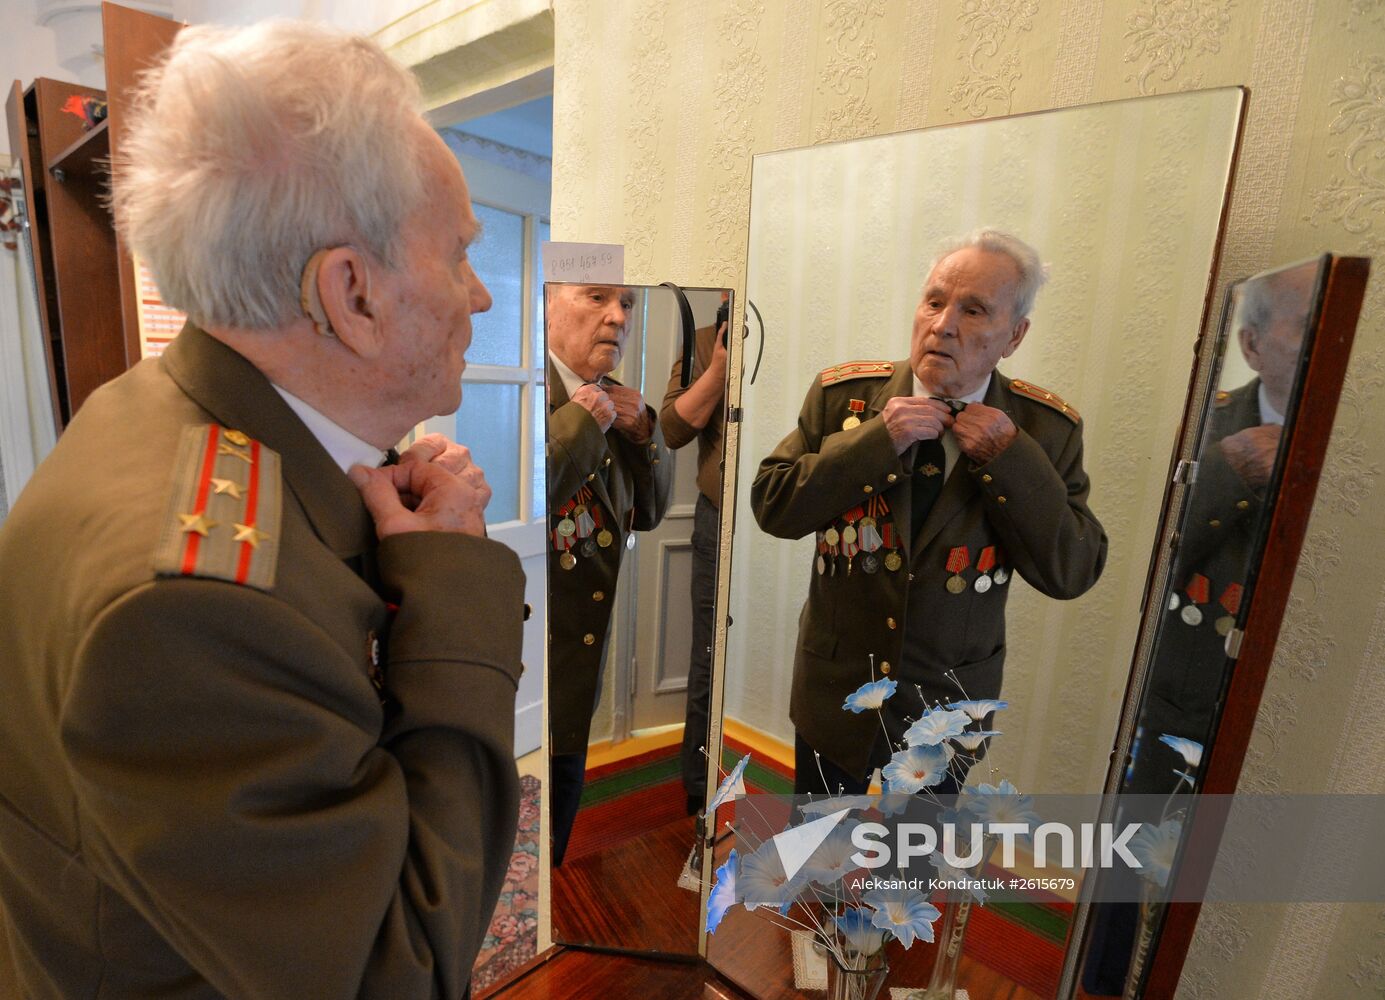 Veteran of Great Patriotic War Ivan Davidenko